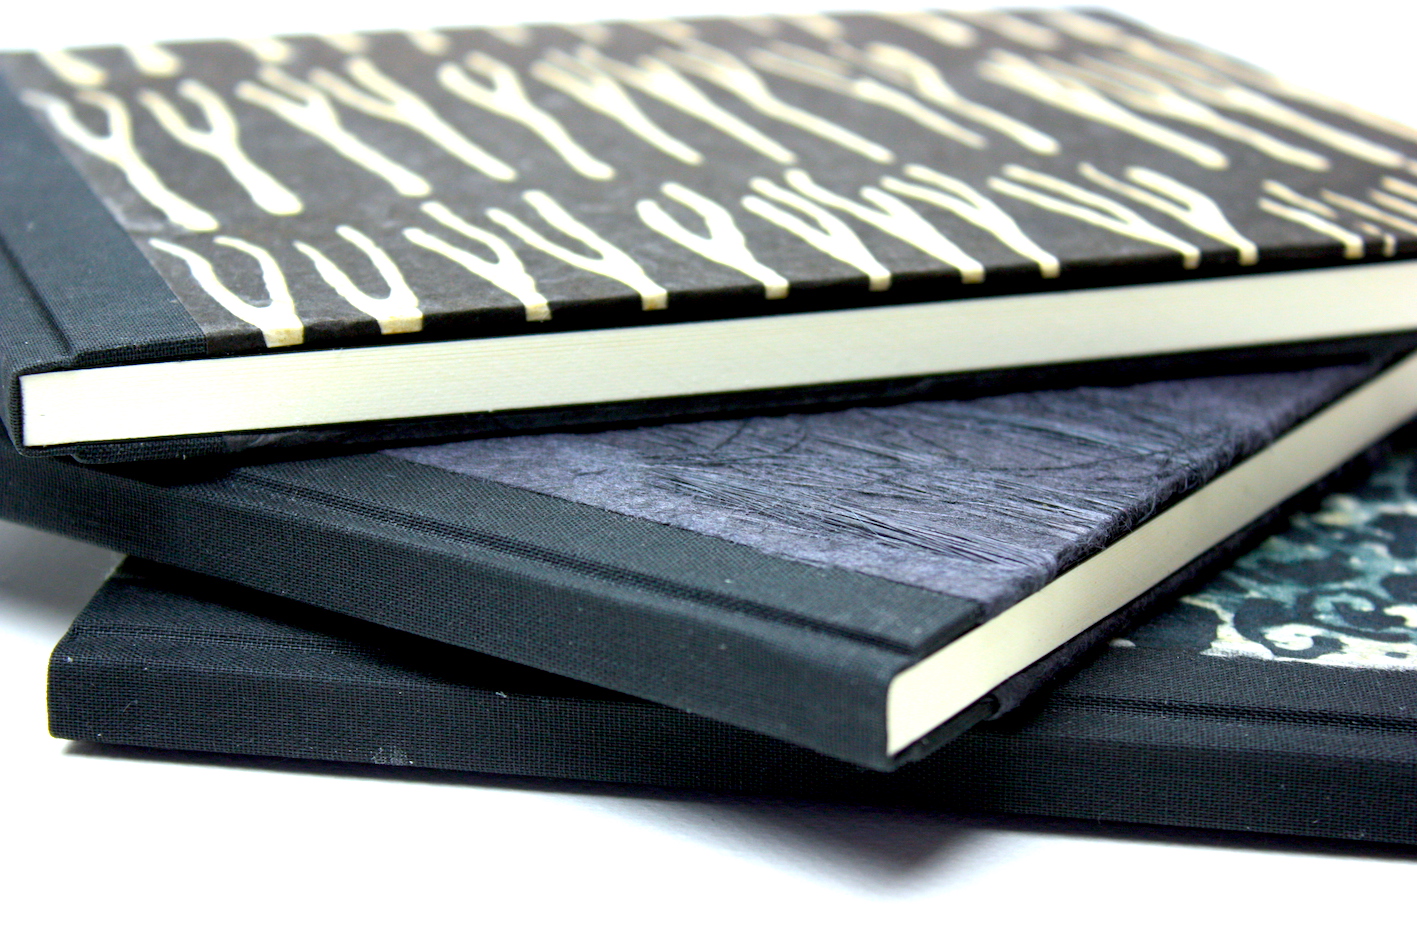 Notitieboekjes gekartonneerd geheel ingeslagen linnen rug hoekjes zwart lokta papier batikpapier hand gemaakt